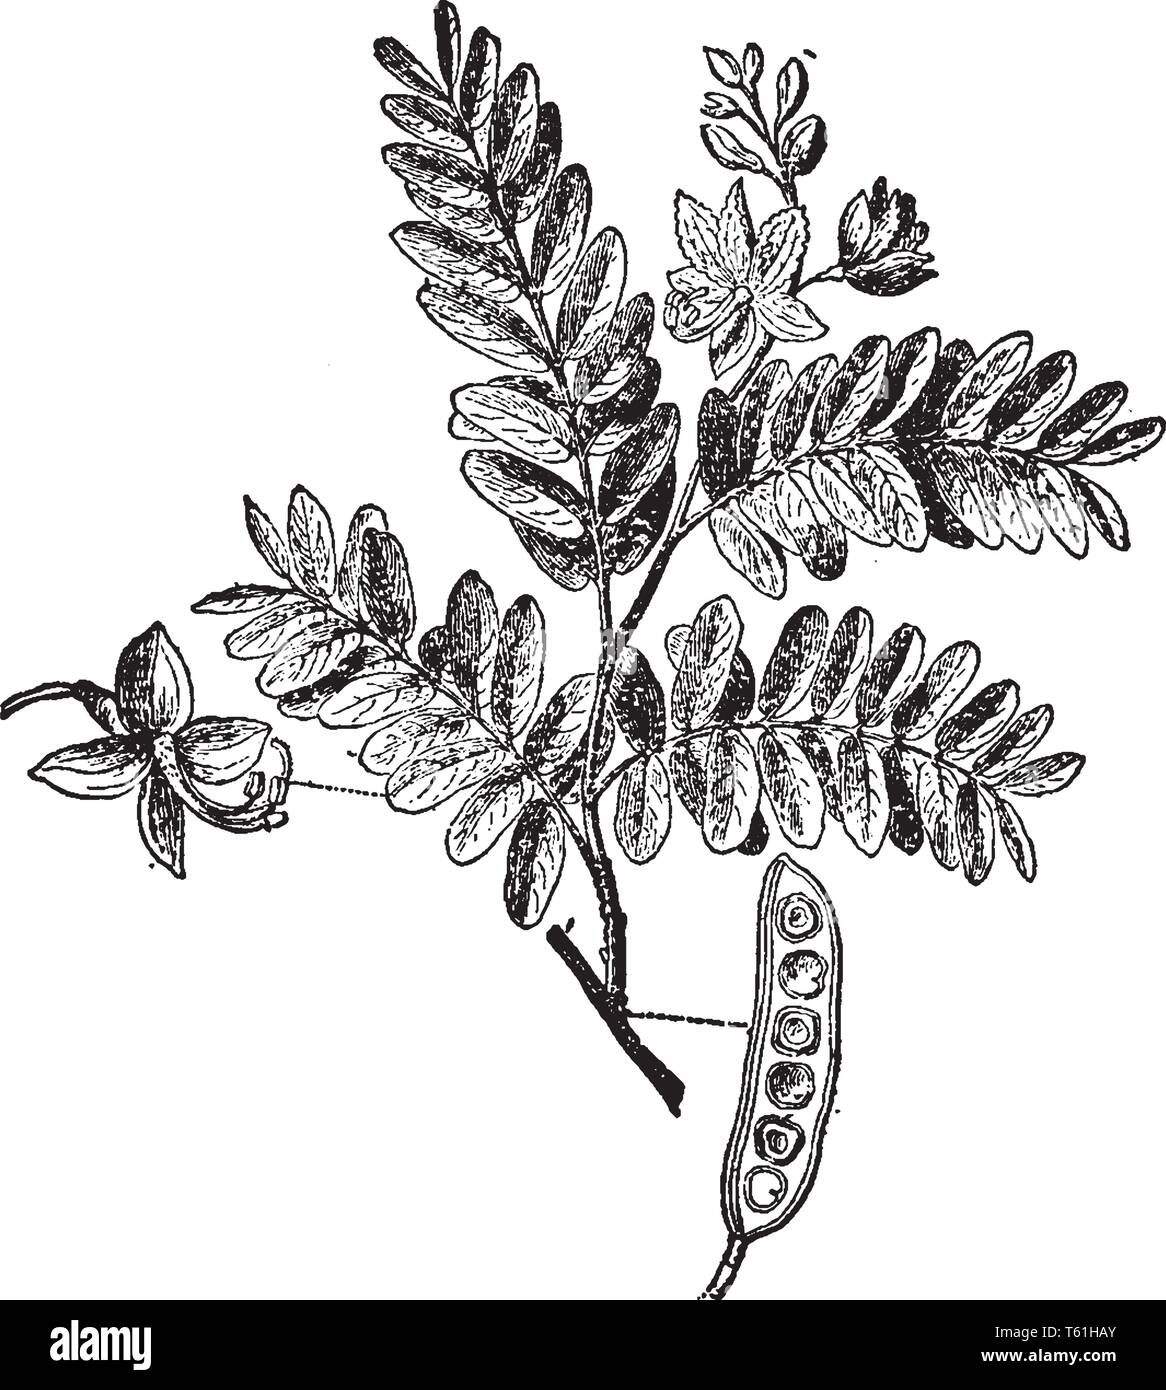 Un albero tropicale della famiglia del legume, la cui baccelli vengono utilizzati nella produzione di cibo e bevande, vintage disegno della linea di incisione o illustrazione. Illustrazione Vettoriale